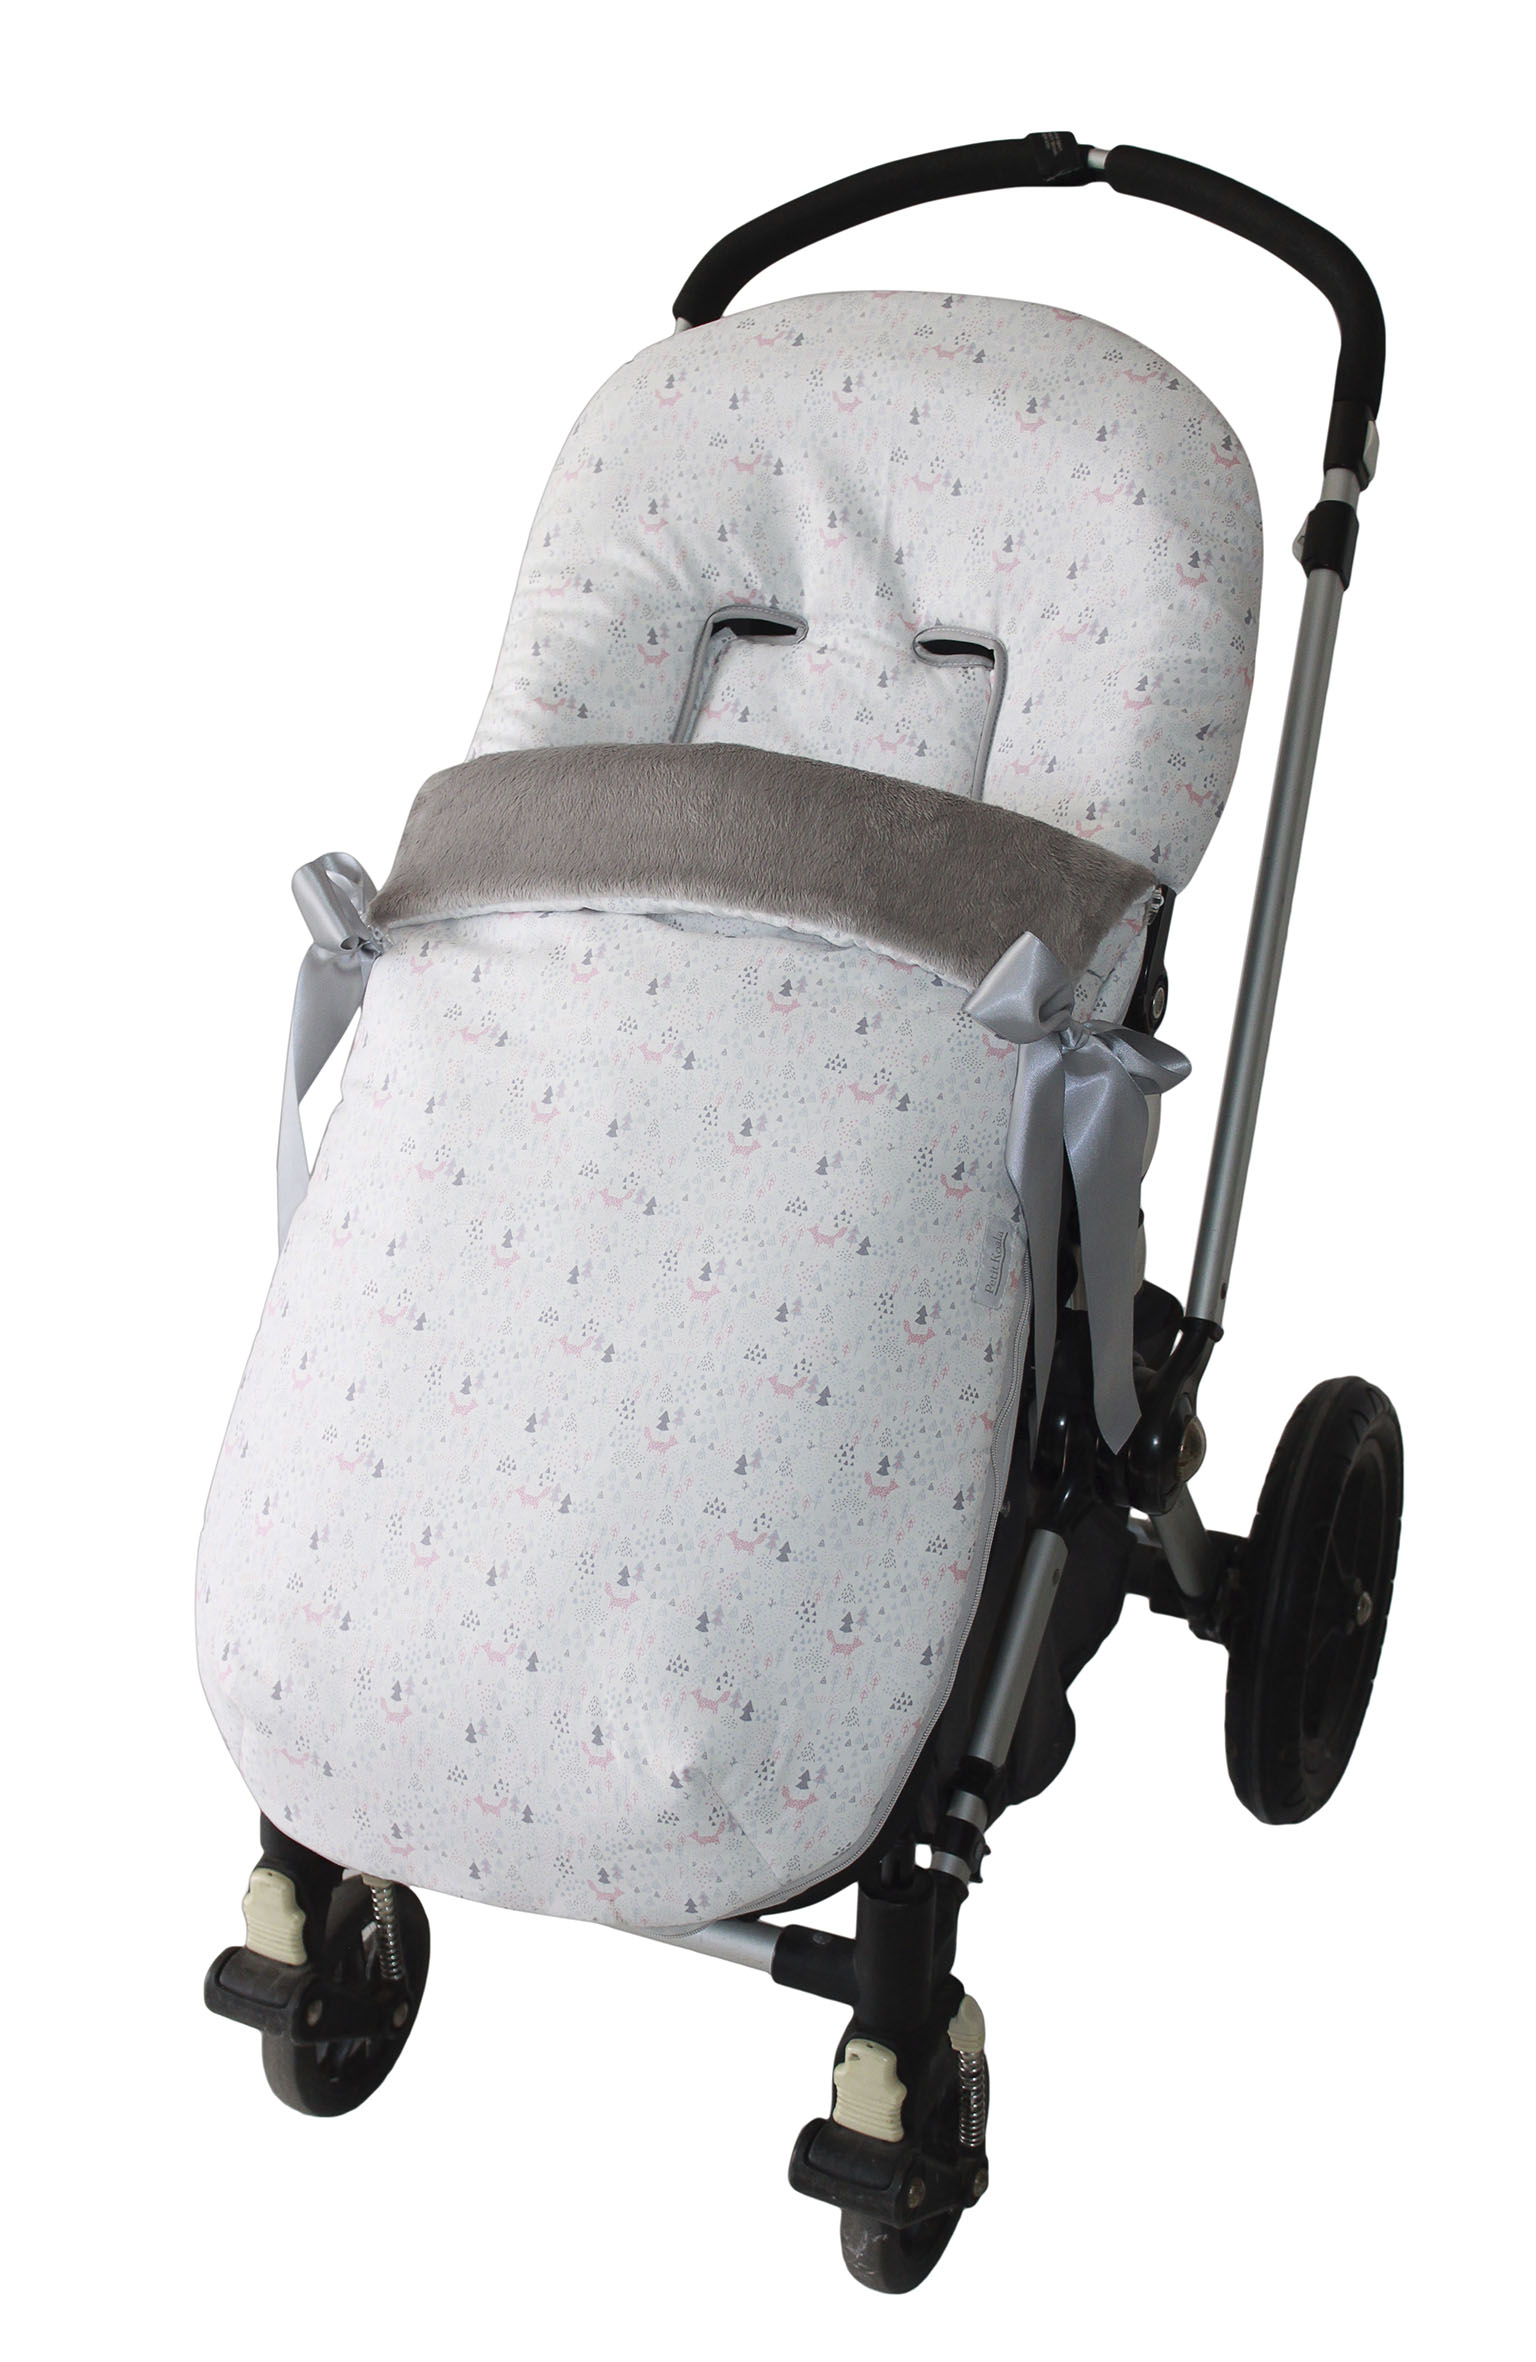 Saco universal para carrito paseo de bebé o recién nacido bosque